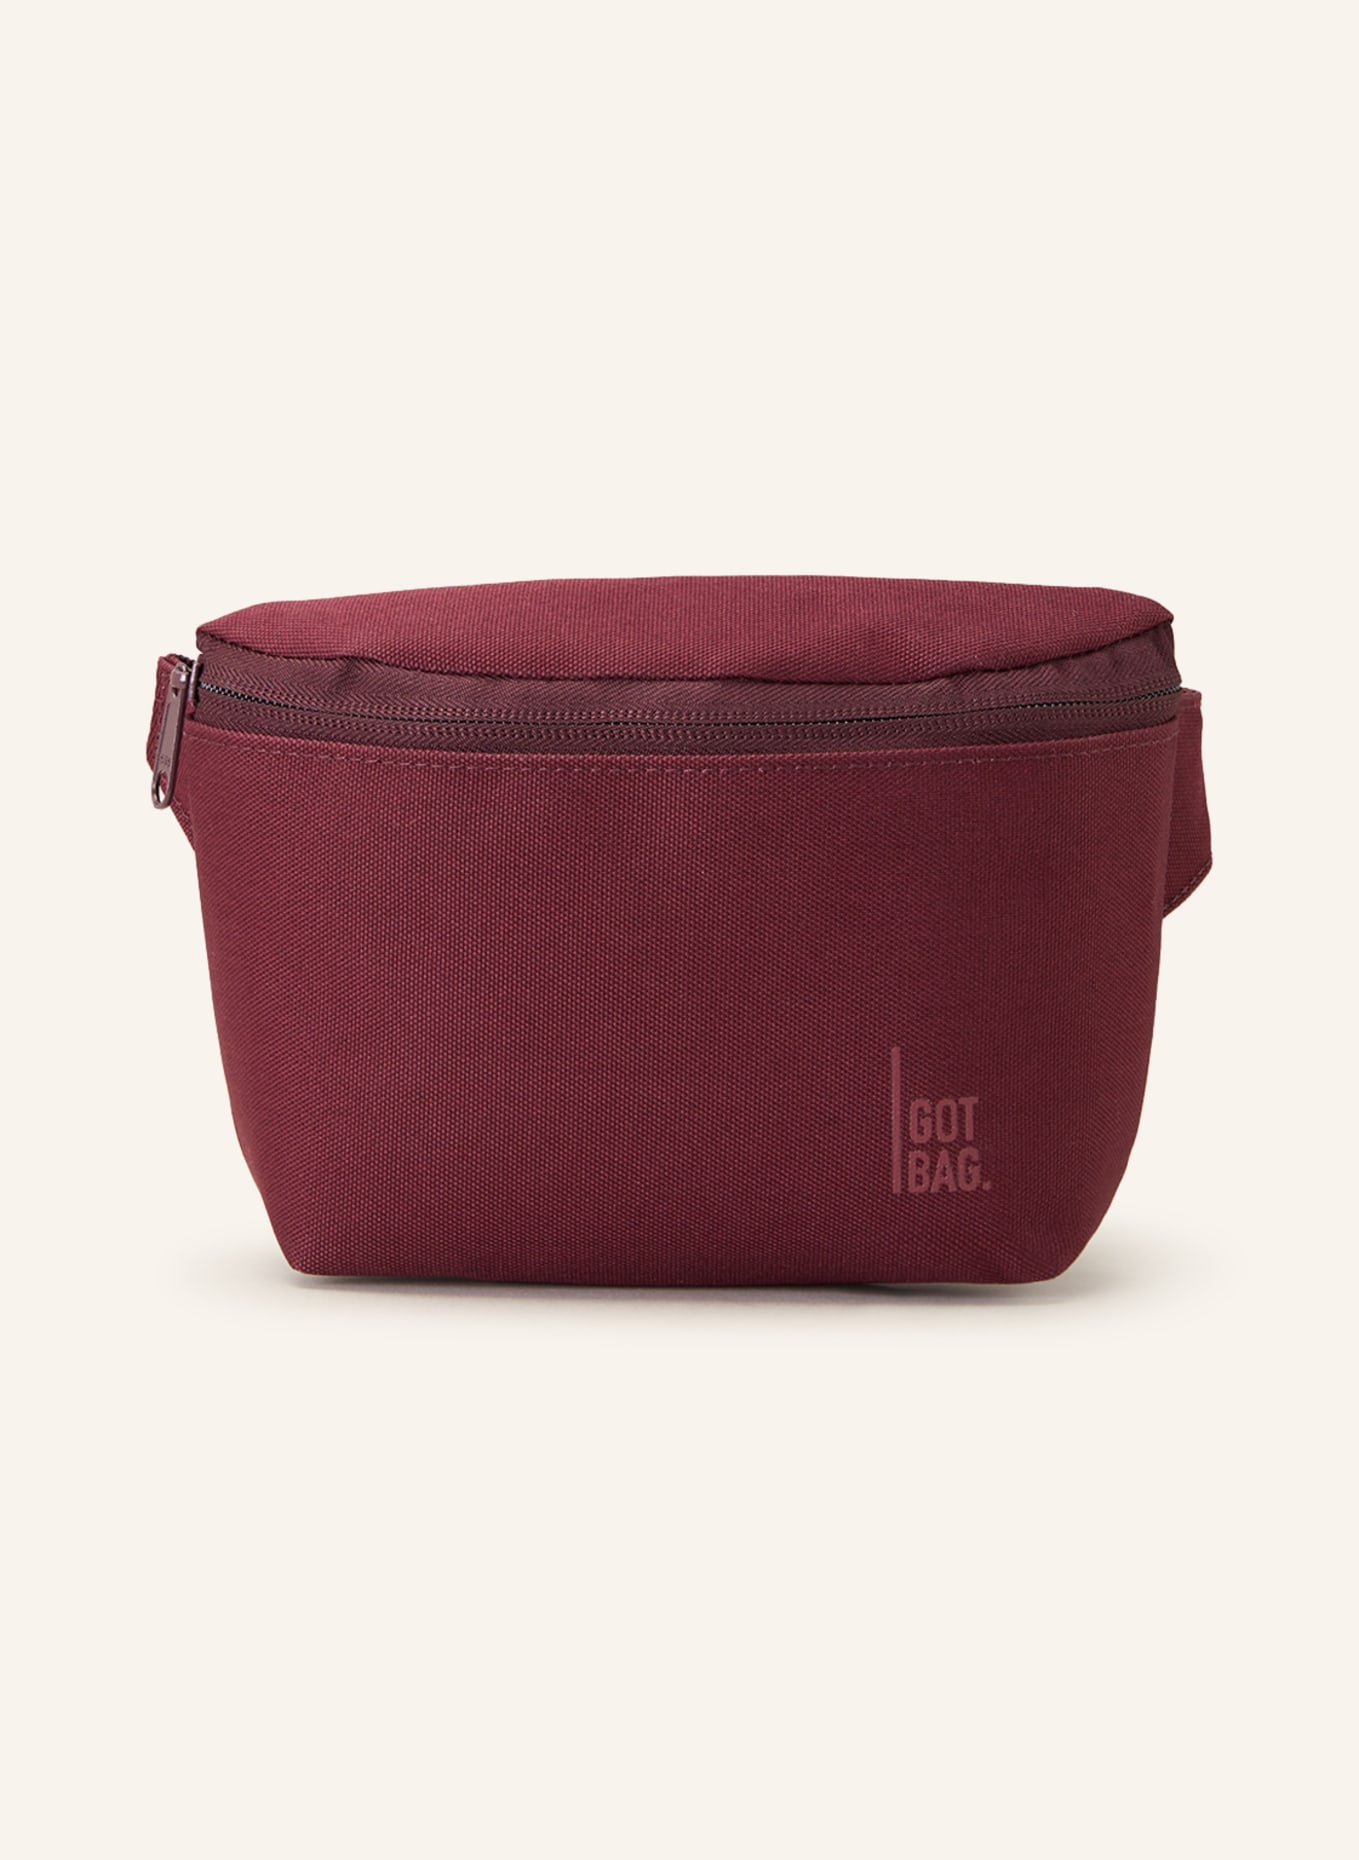 GOT BAG Waist bag, Color: DARK RED (Image 1)